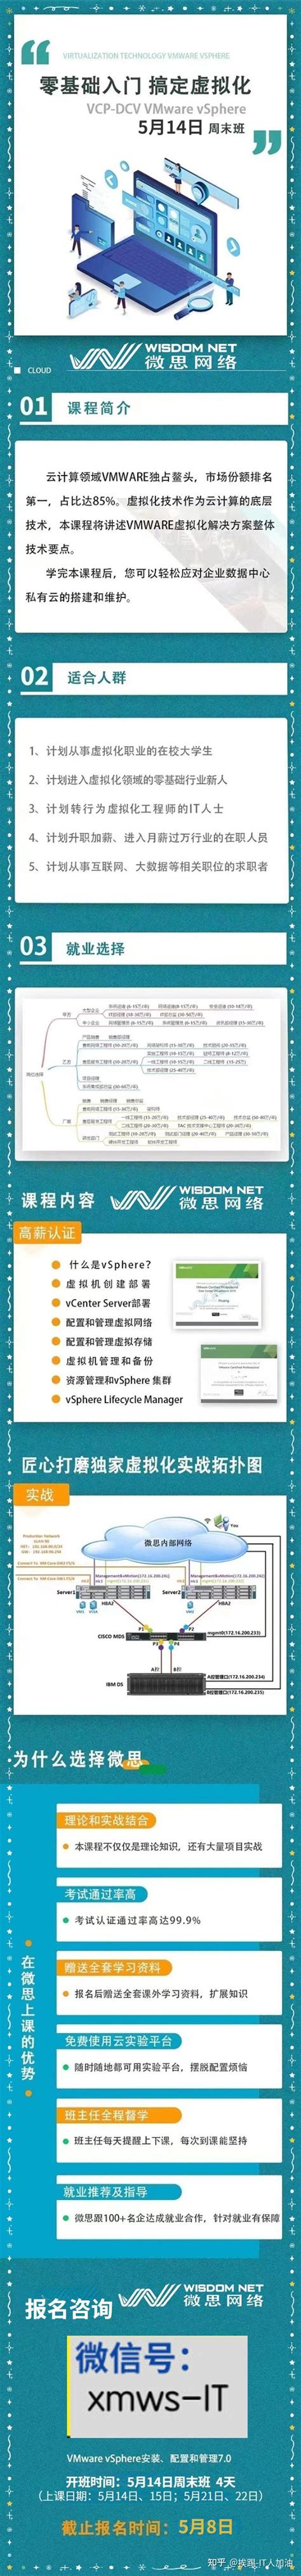 VMware VCP认证概述及认证相关介绍 - 公司动态 - 上海腾科教育科技有限公司